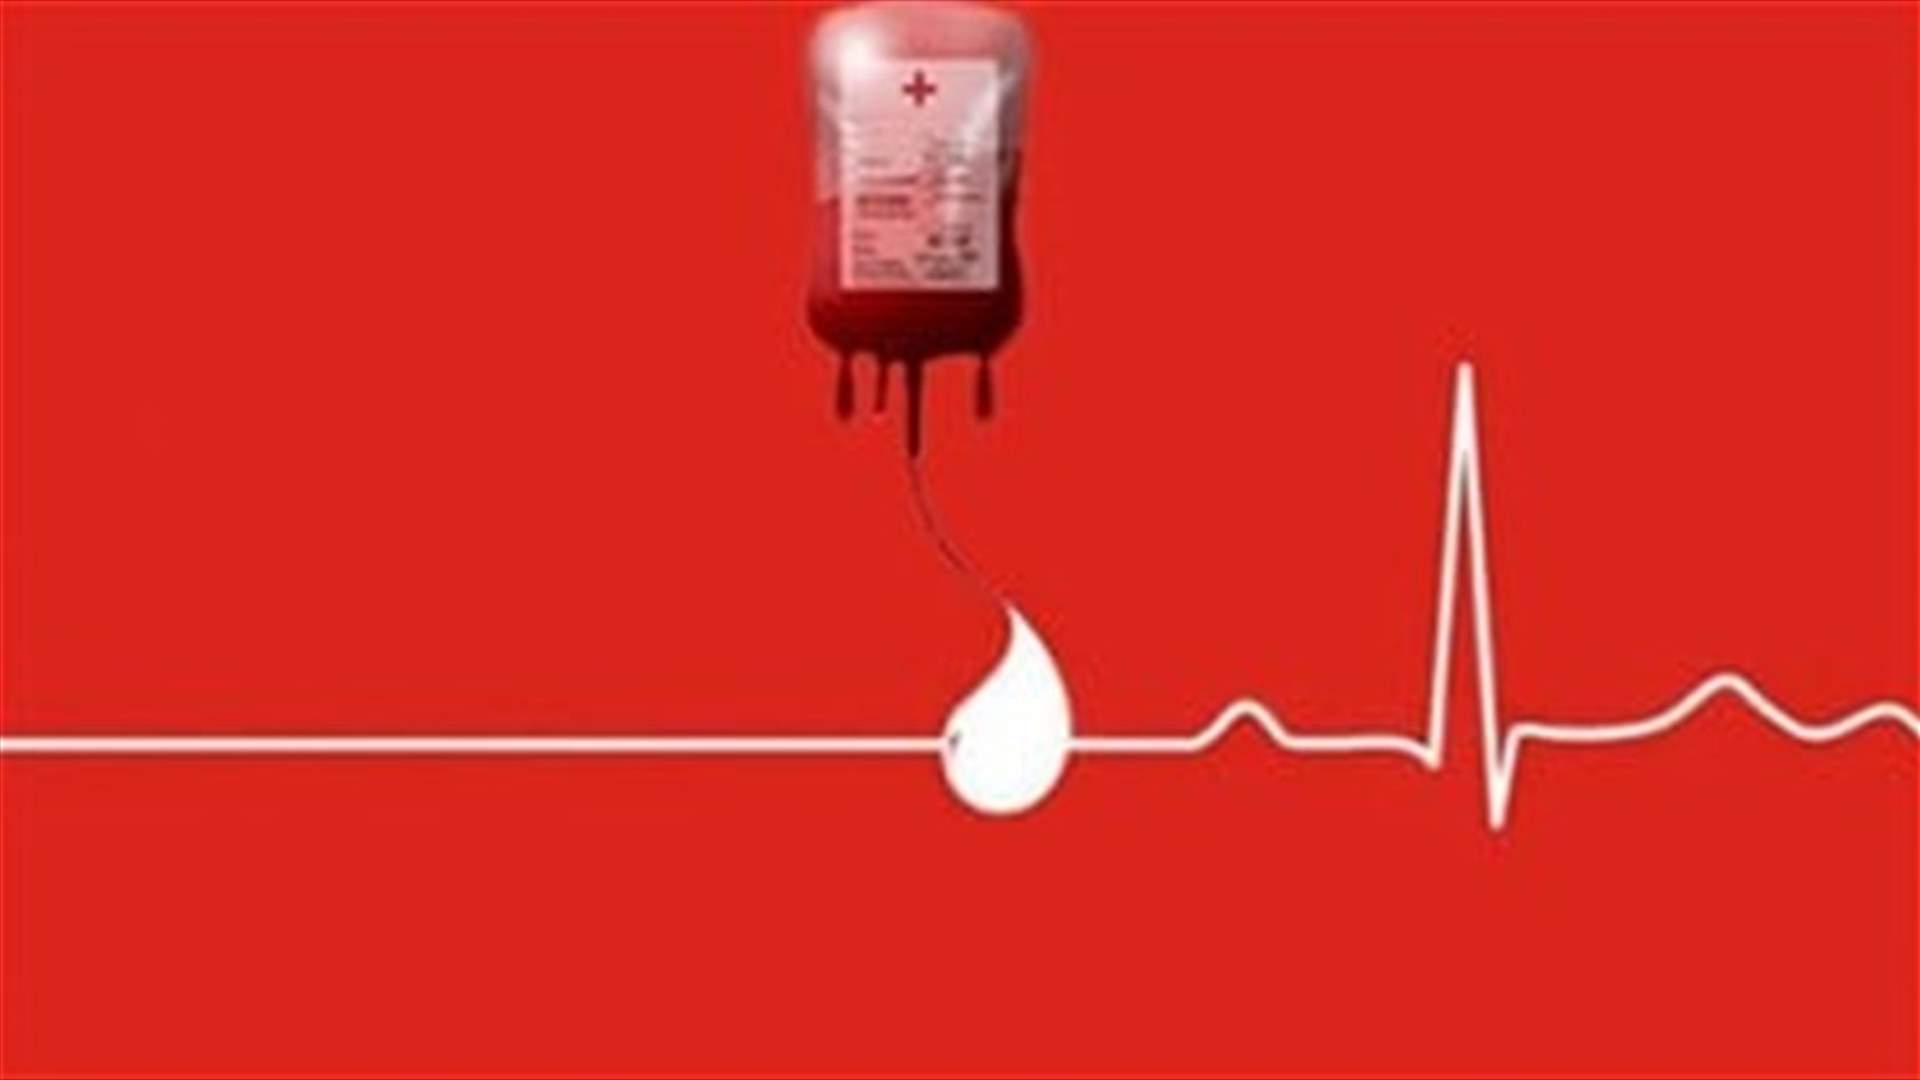 مريض في مستشفى سيدة لبنان - جونية بحاجة ماسة إلى دم من فئة A+. للتبرع، الإتصال على: 76089816